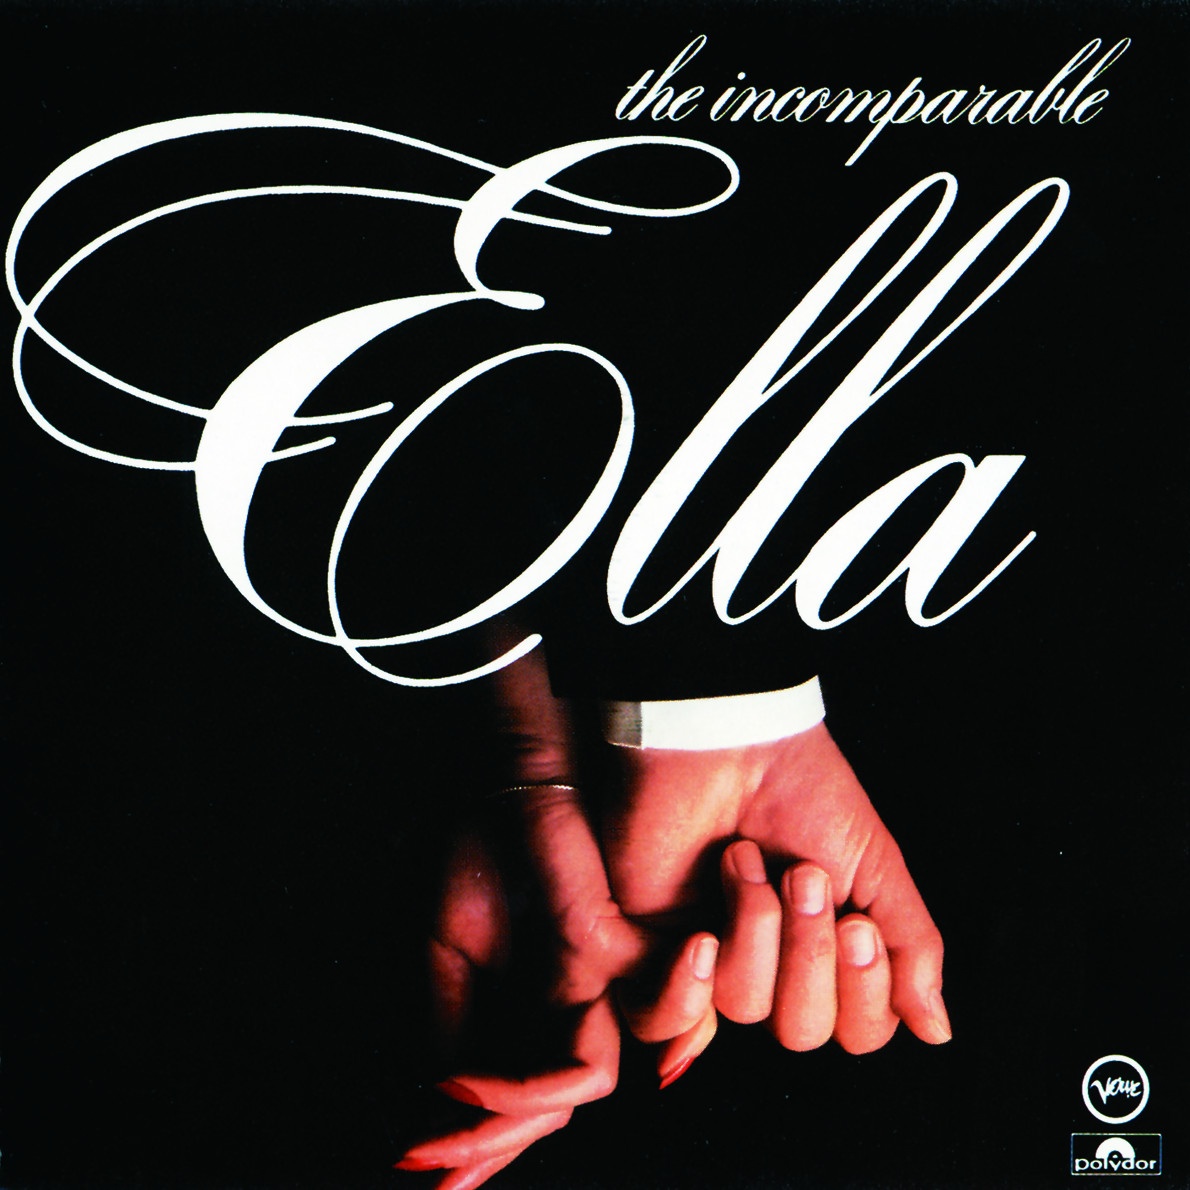 The Incomparable Ella